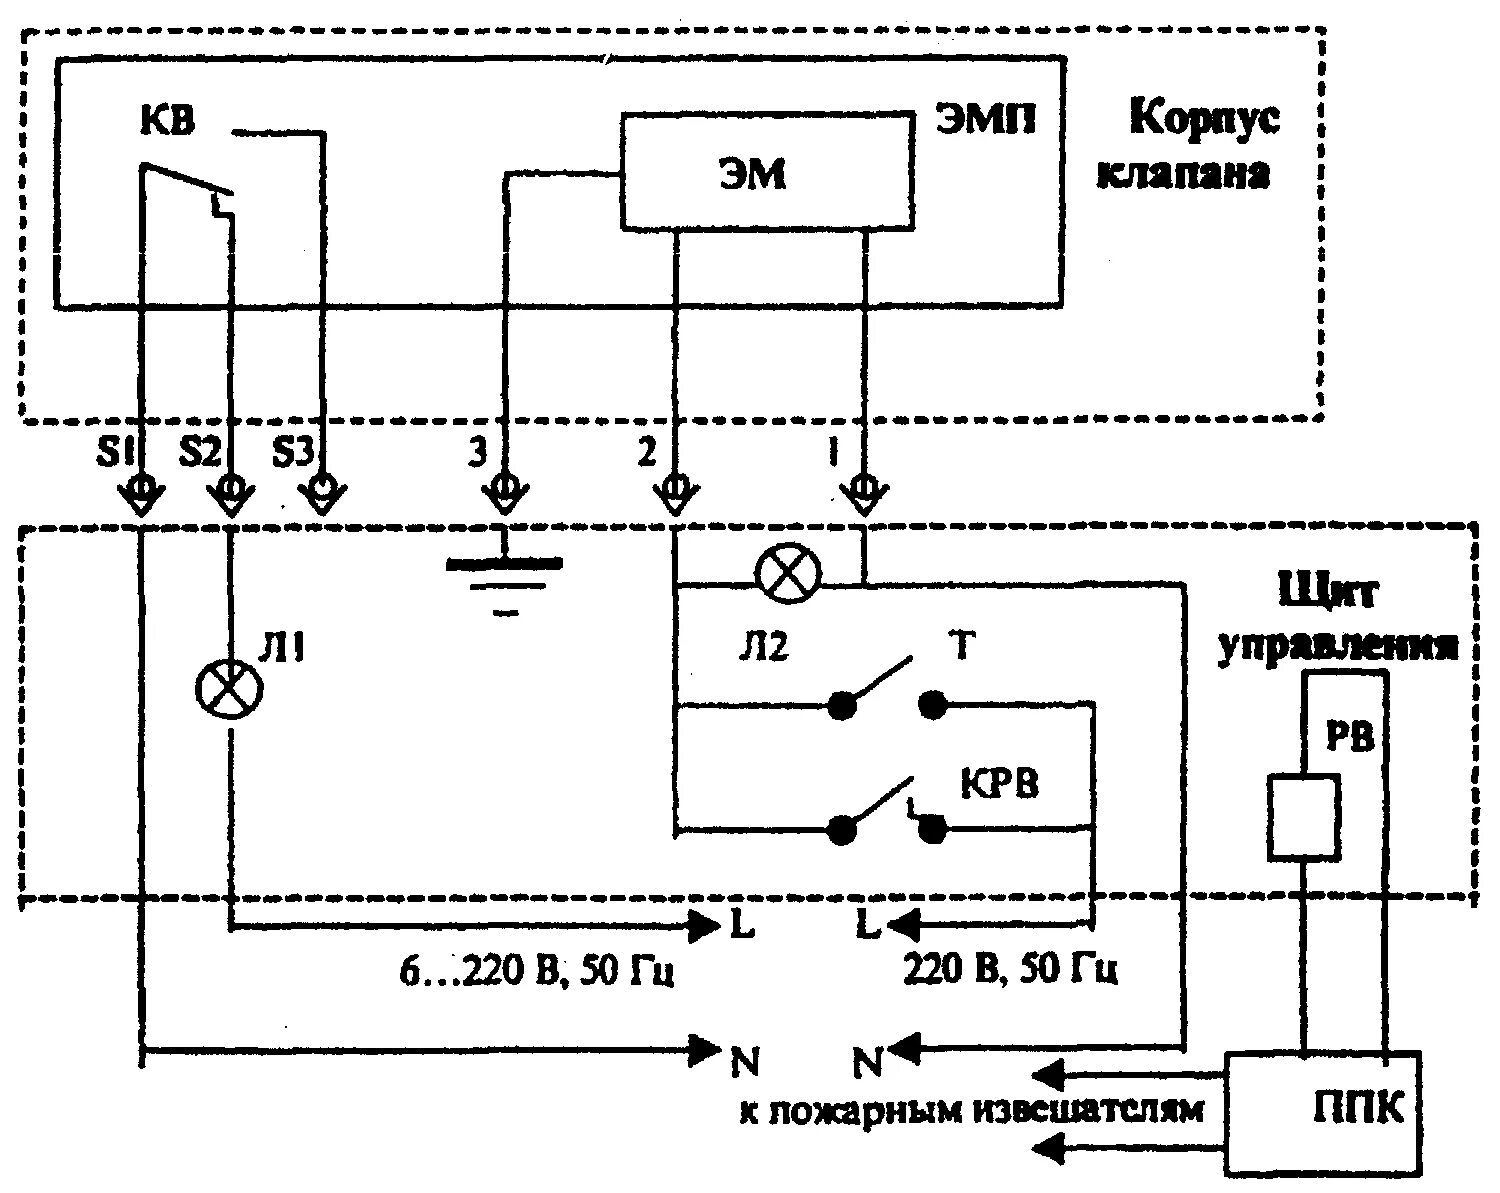 Кпс 1м 60. Клапан дымоудаления КДМ-2 схема подключения. ЭМП-к1 электромагнитный схема подключения. ЭМП-к1 электромагнитный привод схема подключения. ЭМП-к1(220 в) электромагнитный привод.